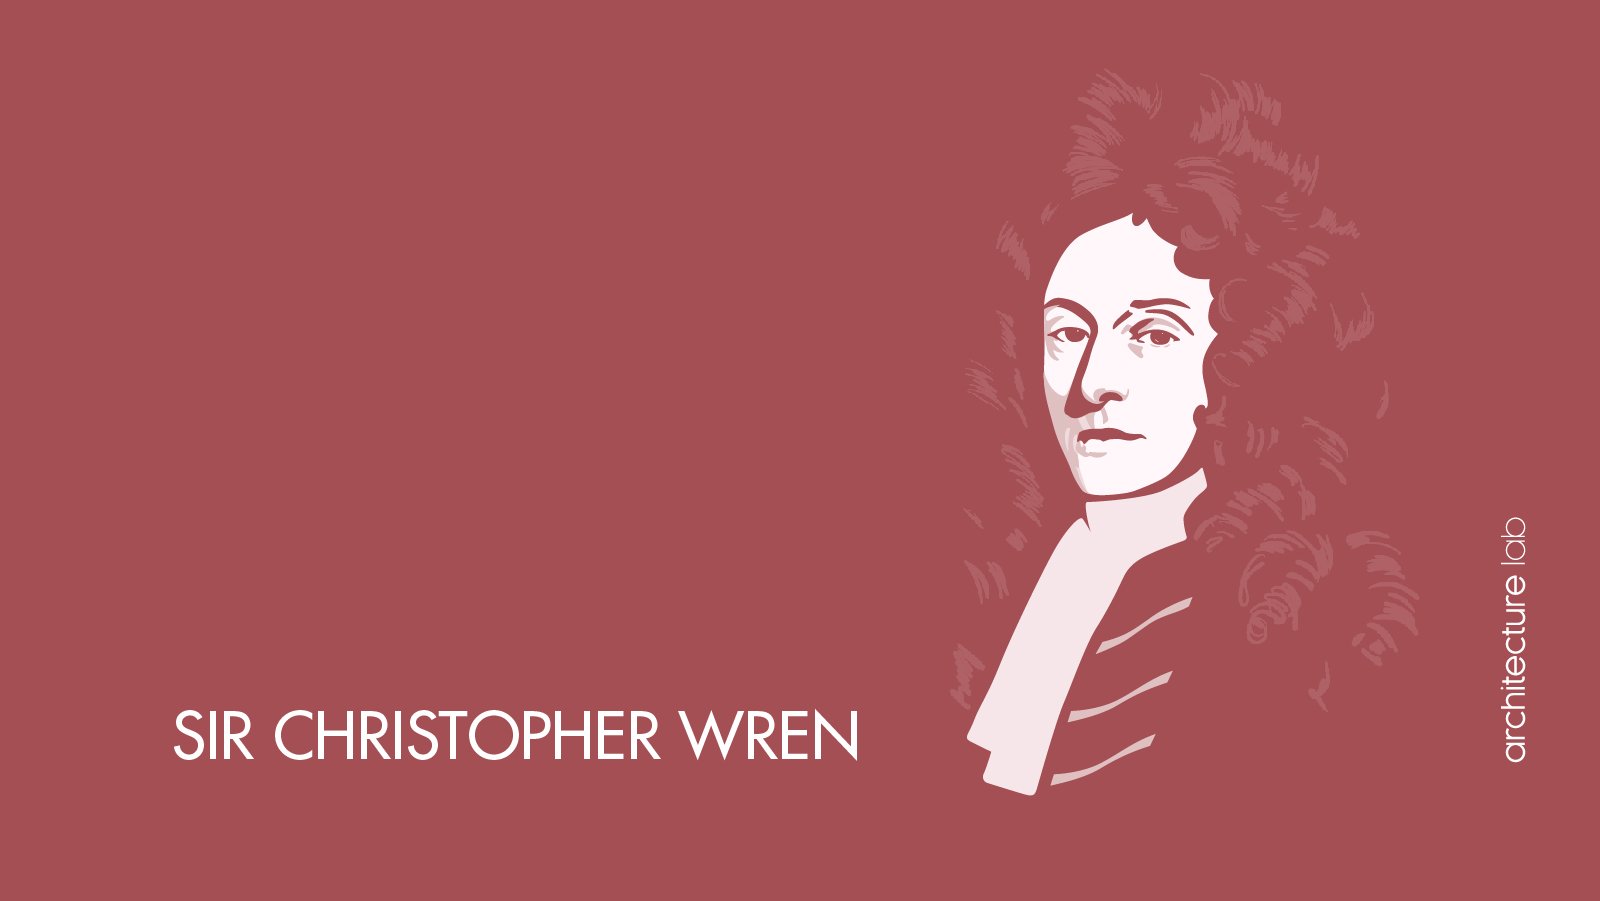 47. Sir christopher wren